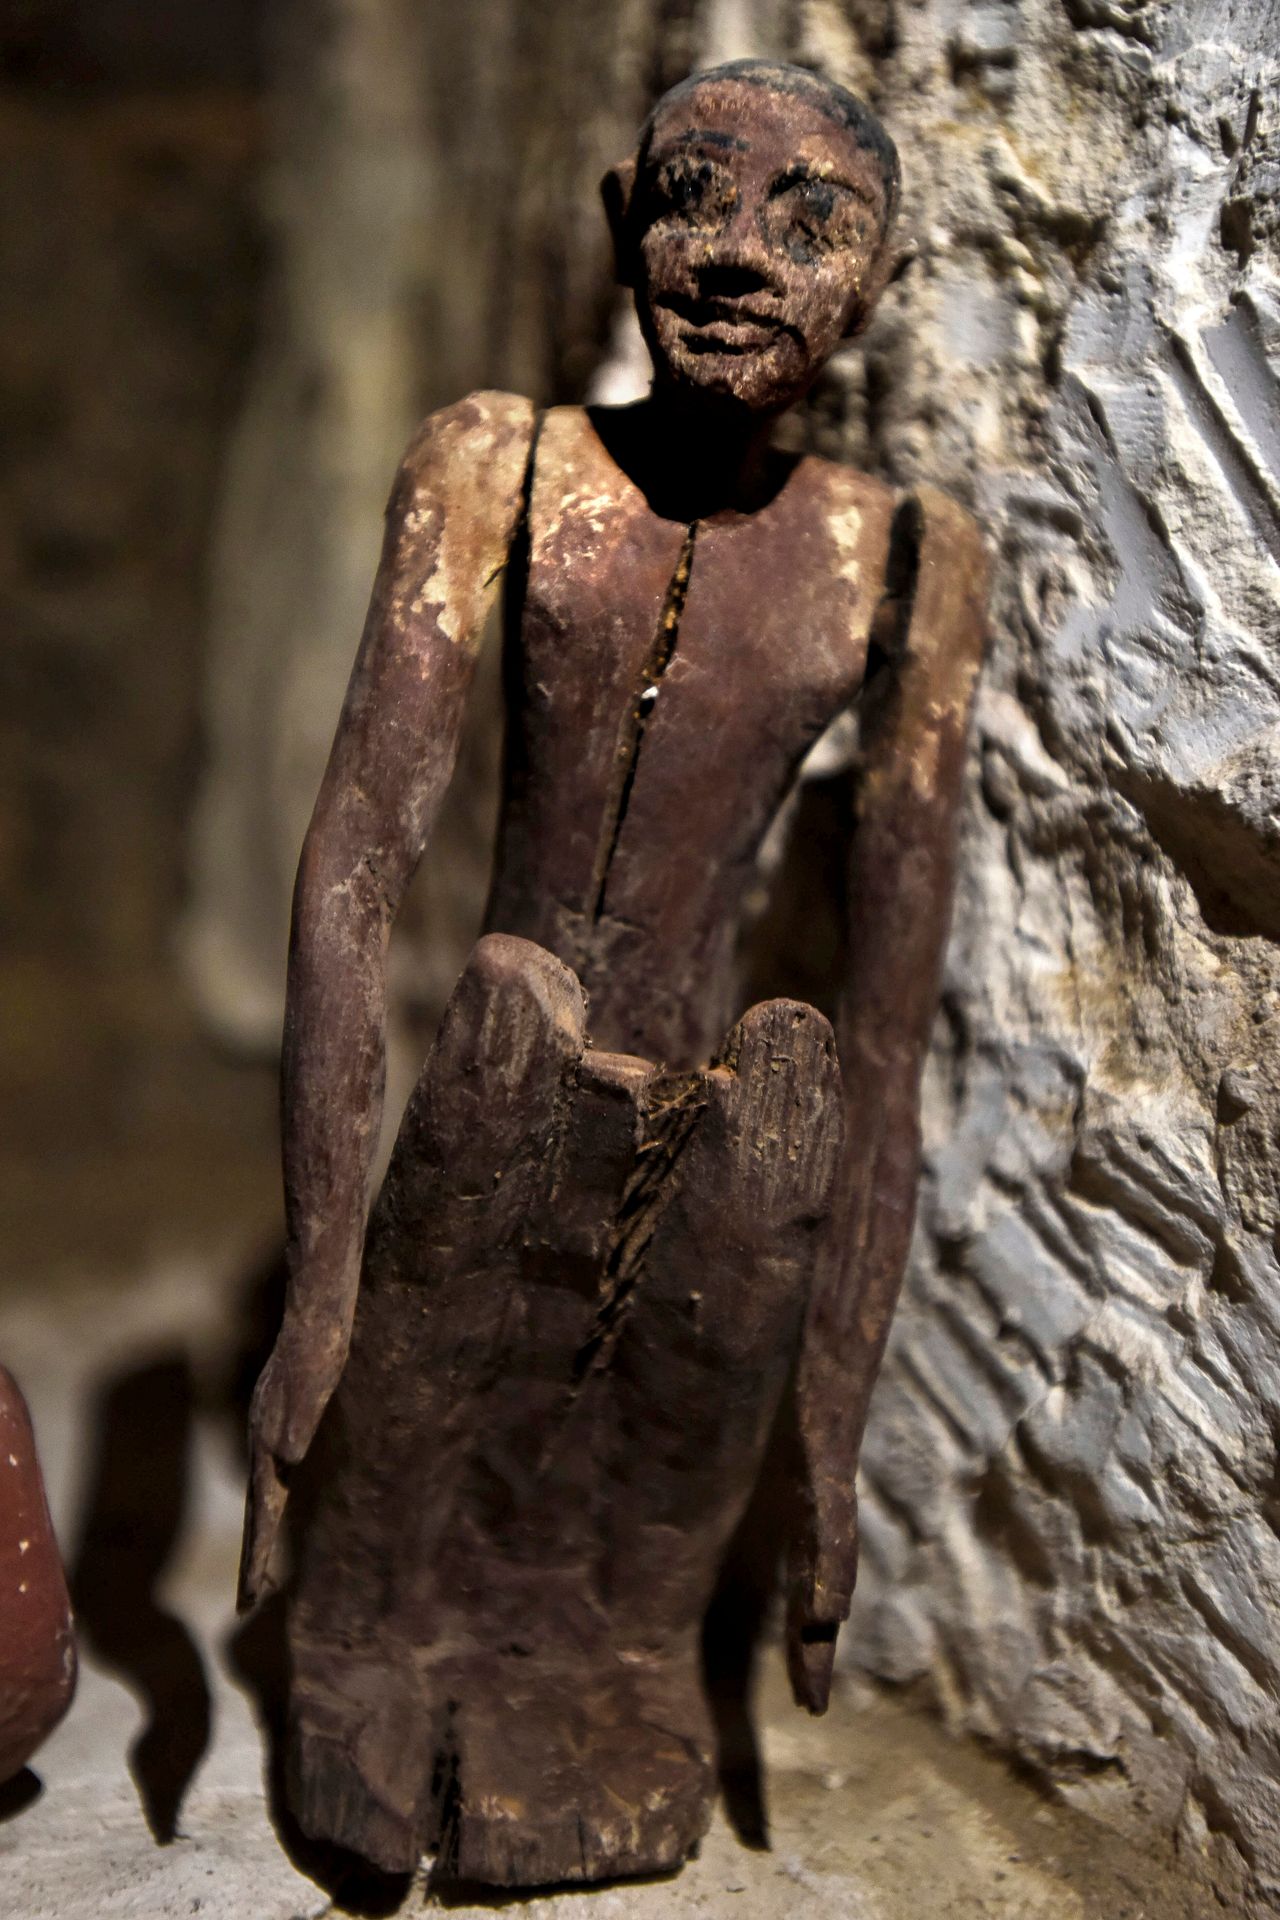 Ξύλινο αγαλματίδιο που ανακαλύφθηκε στον τάφο ενός άνδρα με το όνομα Χενού κοντά στην διάσημη Πυραμίδα του Φαραώ Ζοζέρ.